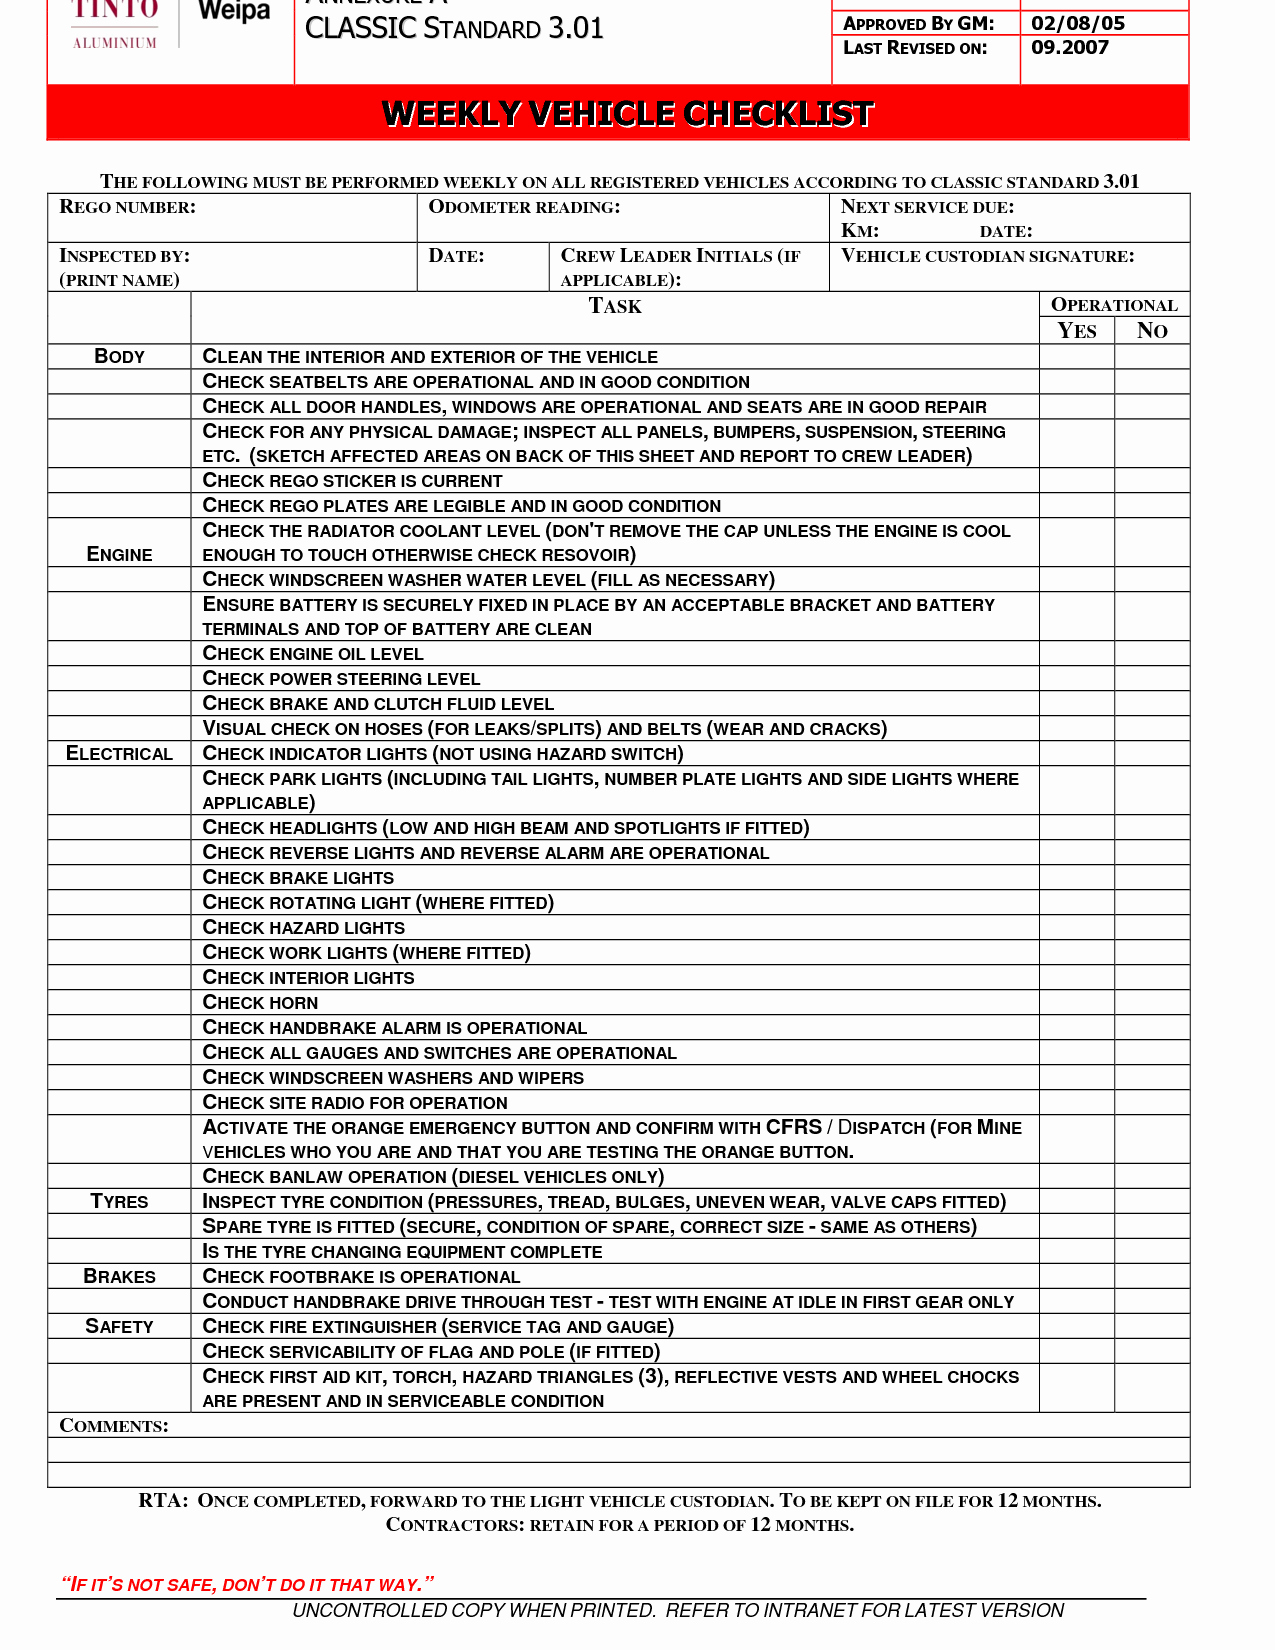 Auto Repair Checklist Template Unique Plete Checklist Clipart Clipart Suggest